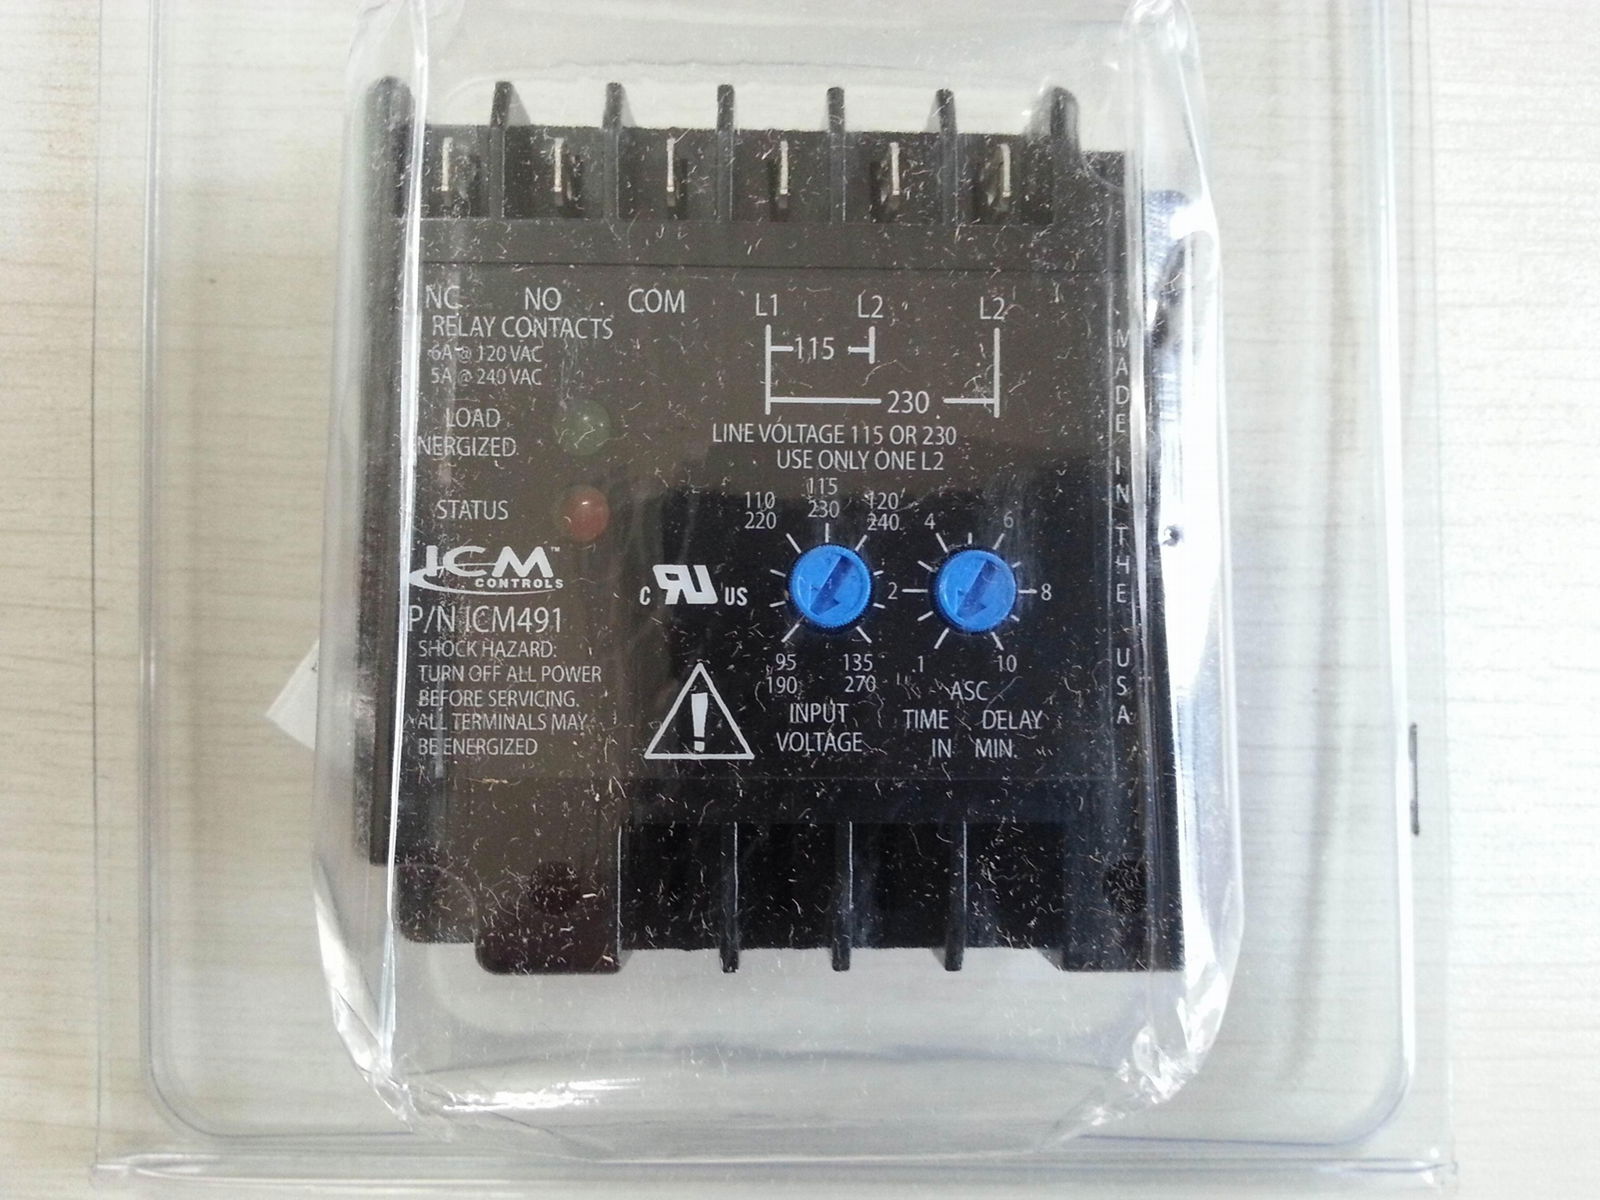 ICM繼電器, 型號: ICM491